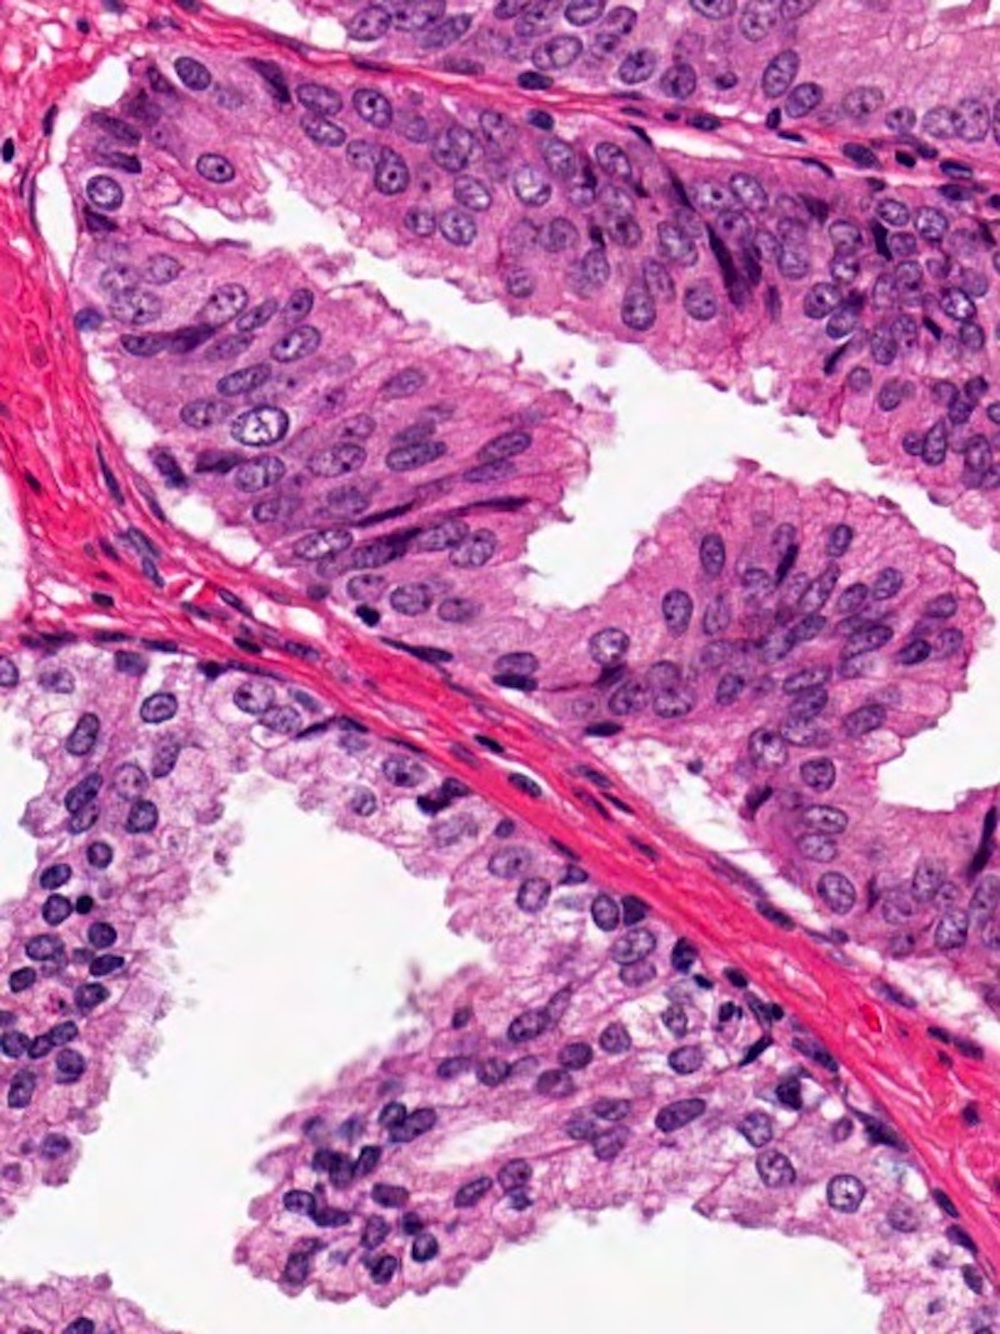 pin prostate pathology outlines Petrezselyem tinktúra prosztatitis